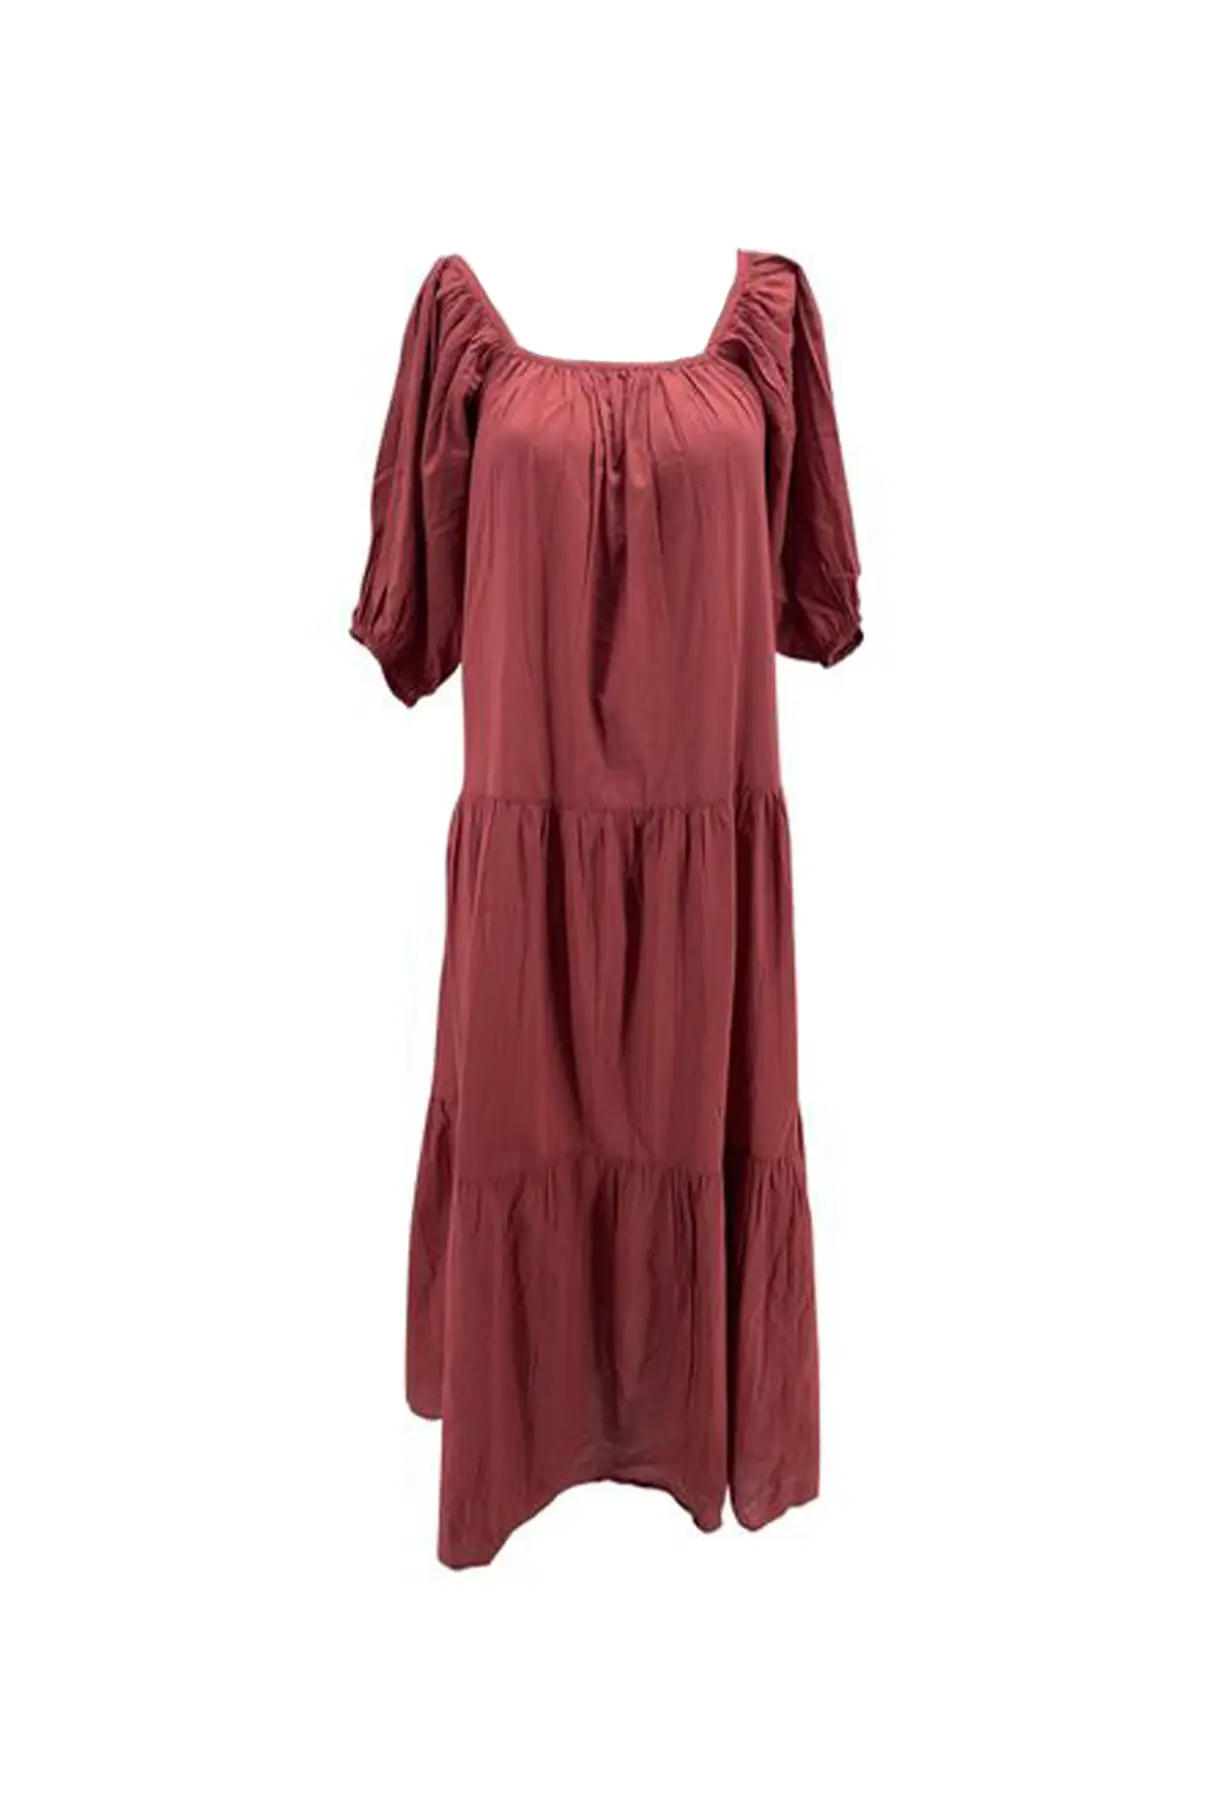 burgundy-cotton-gimaguas-dress.jpg